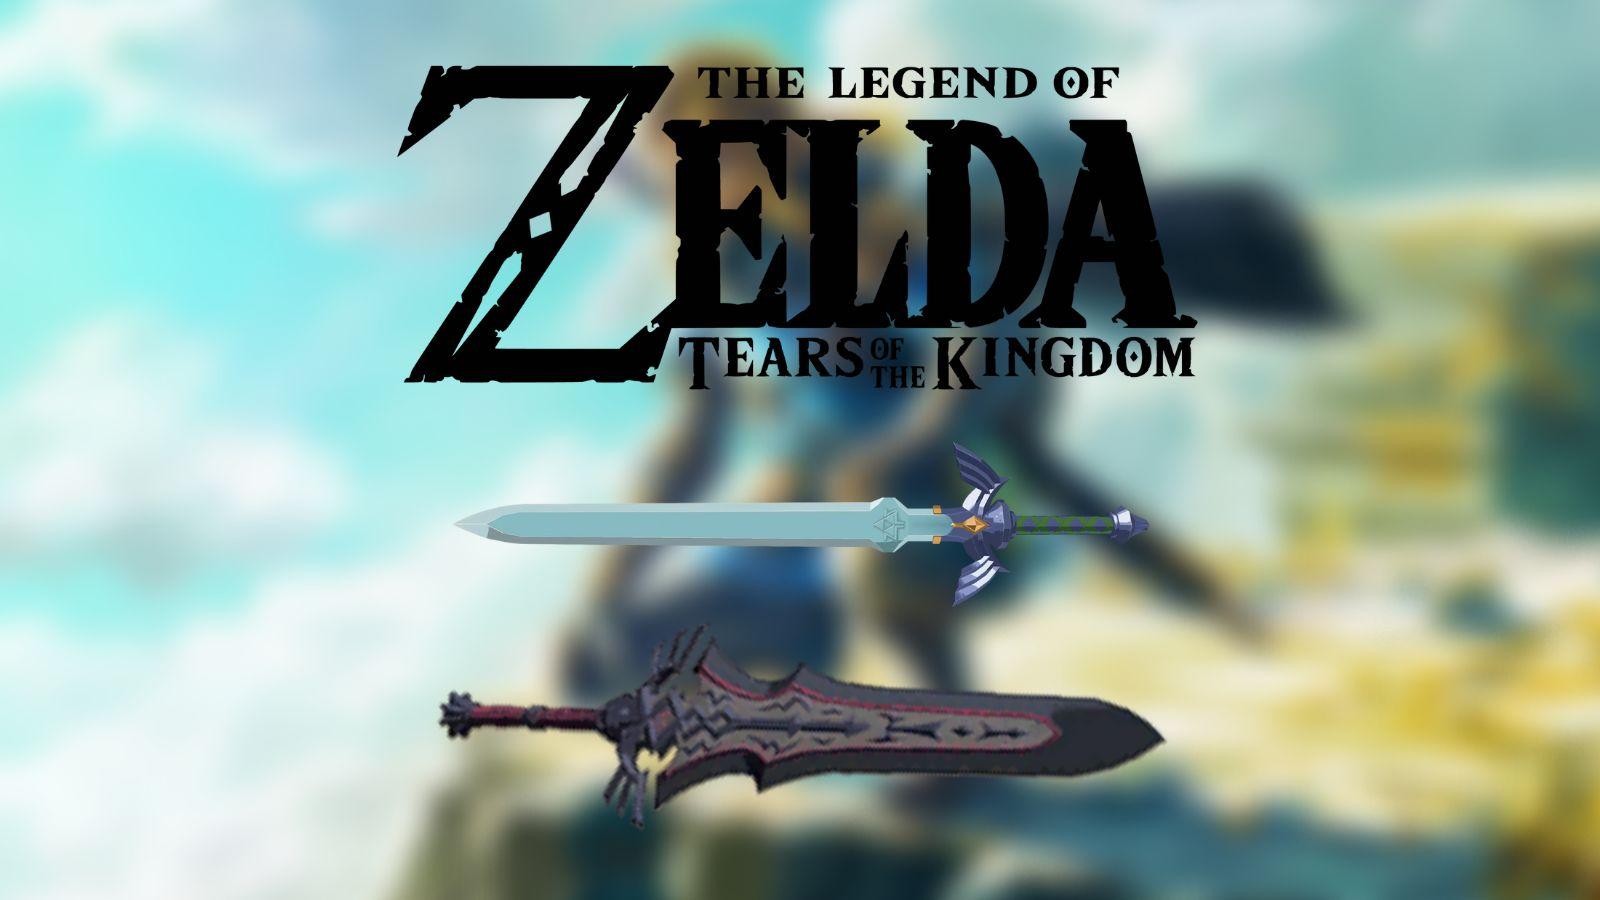 The Legend of Zelda best weapons